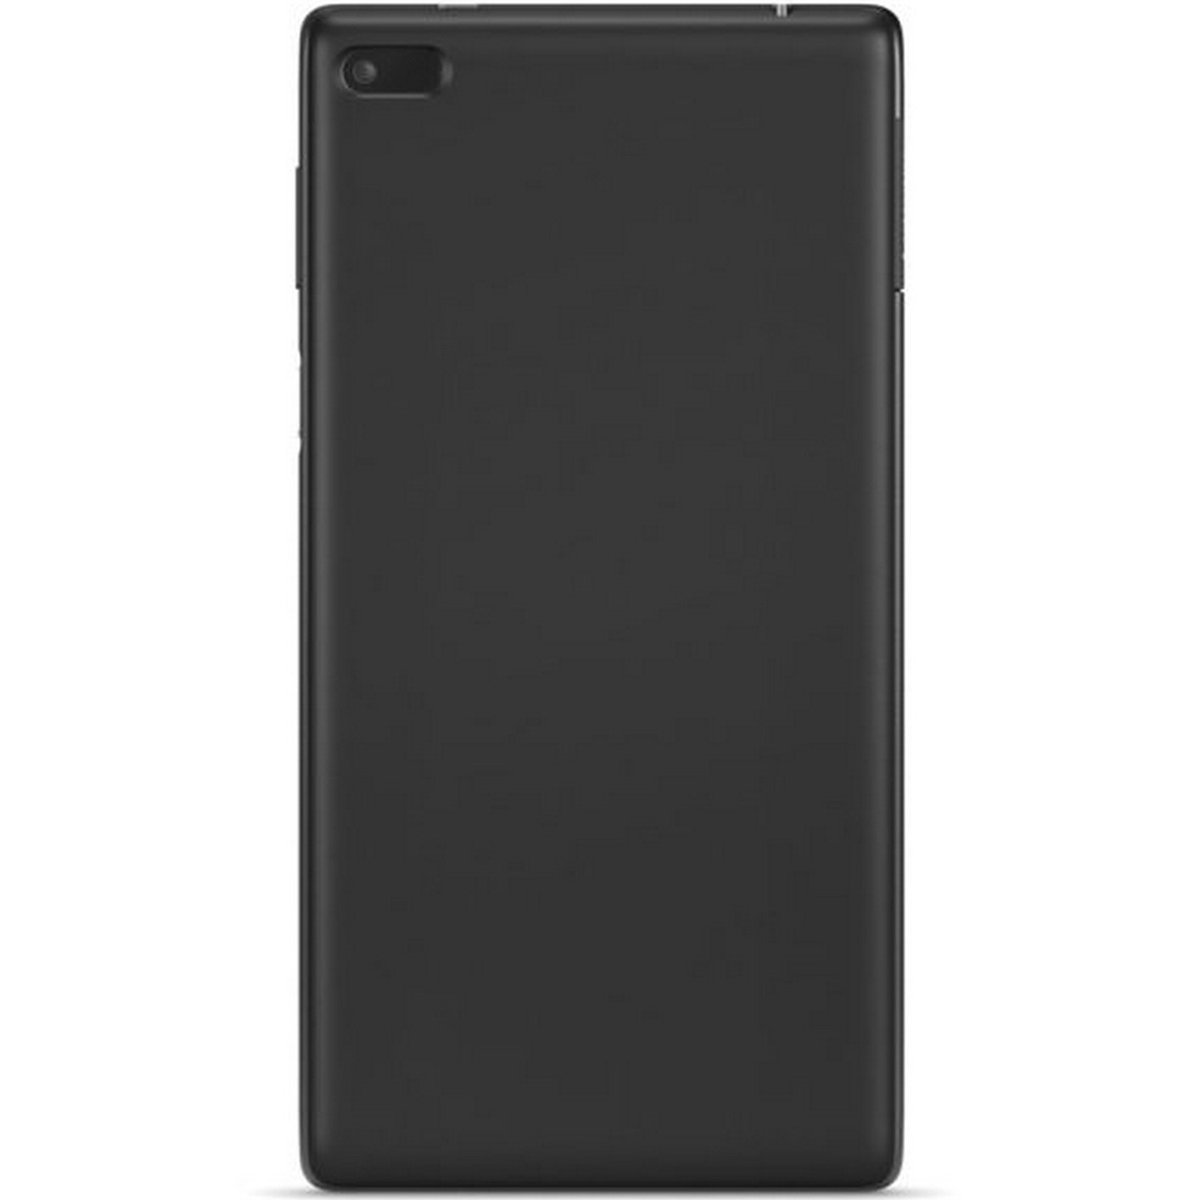 تاب لينوفو تي بي 7504 اكس 7 بوصه 16 جيجا 4 جي - اللون أسود